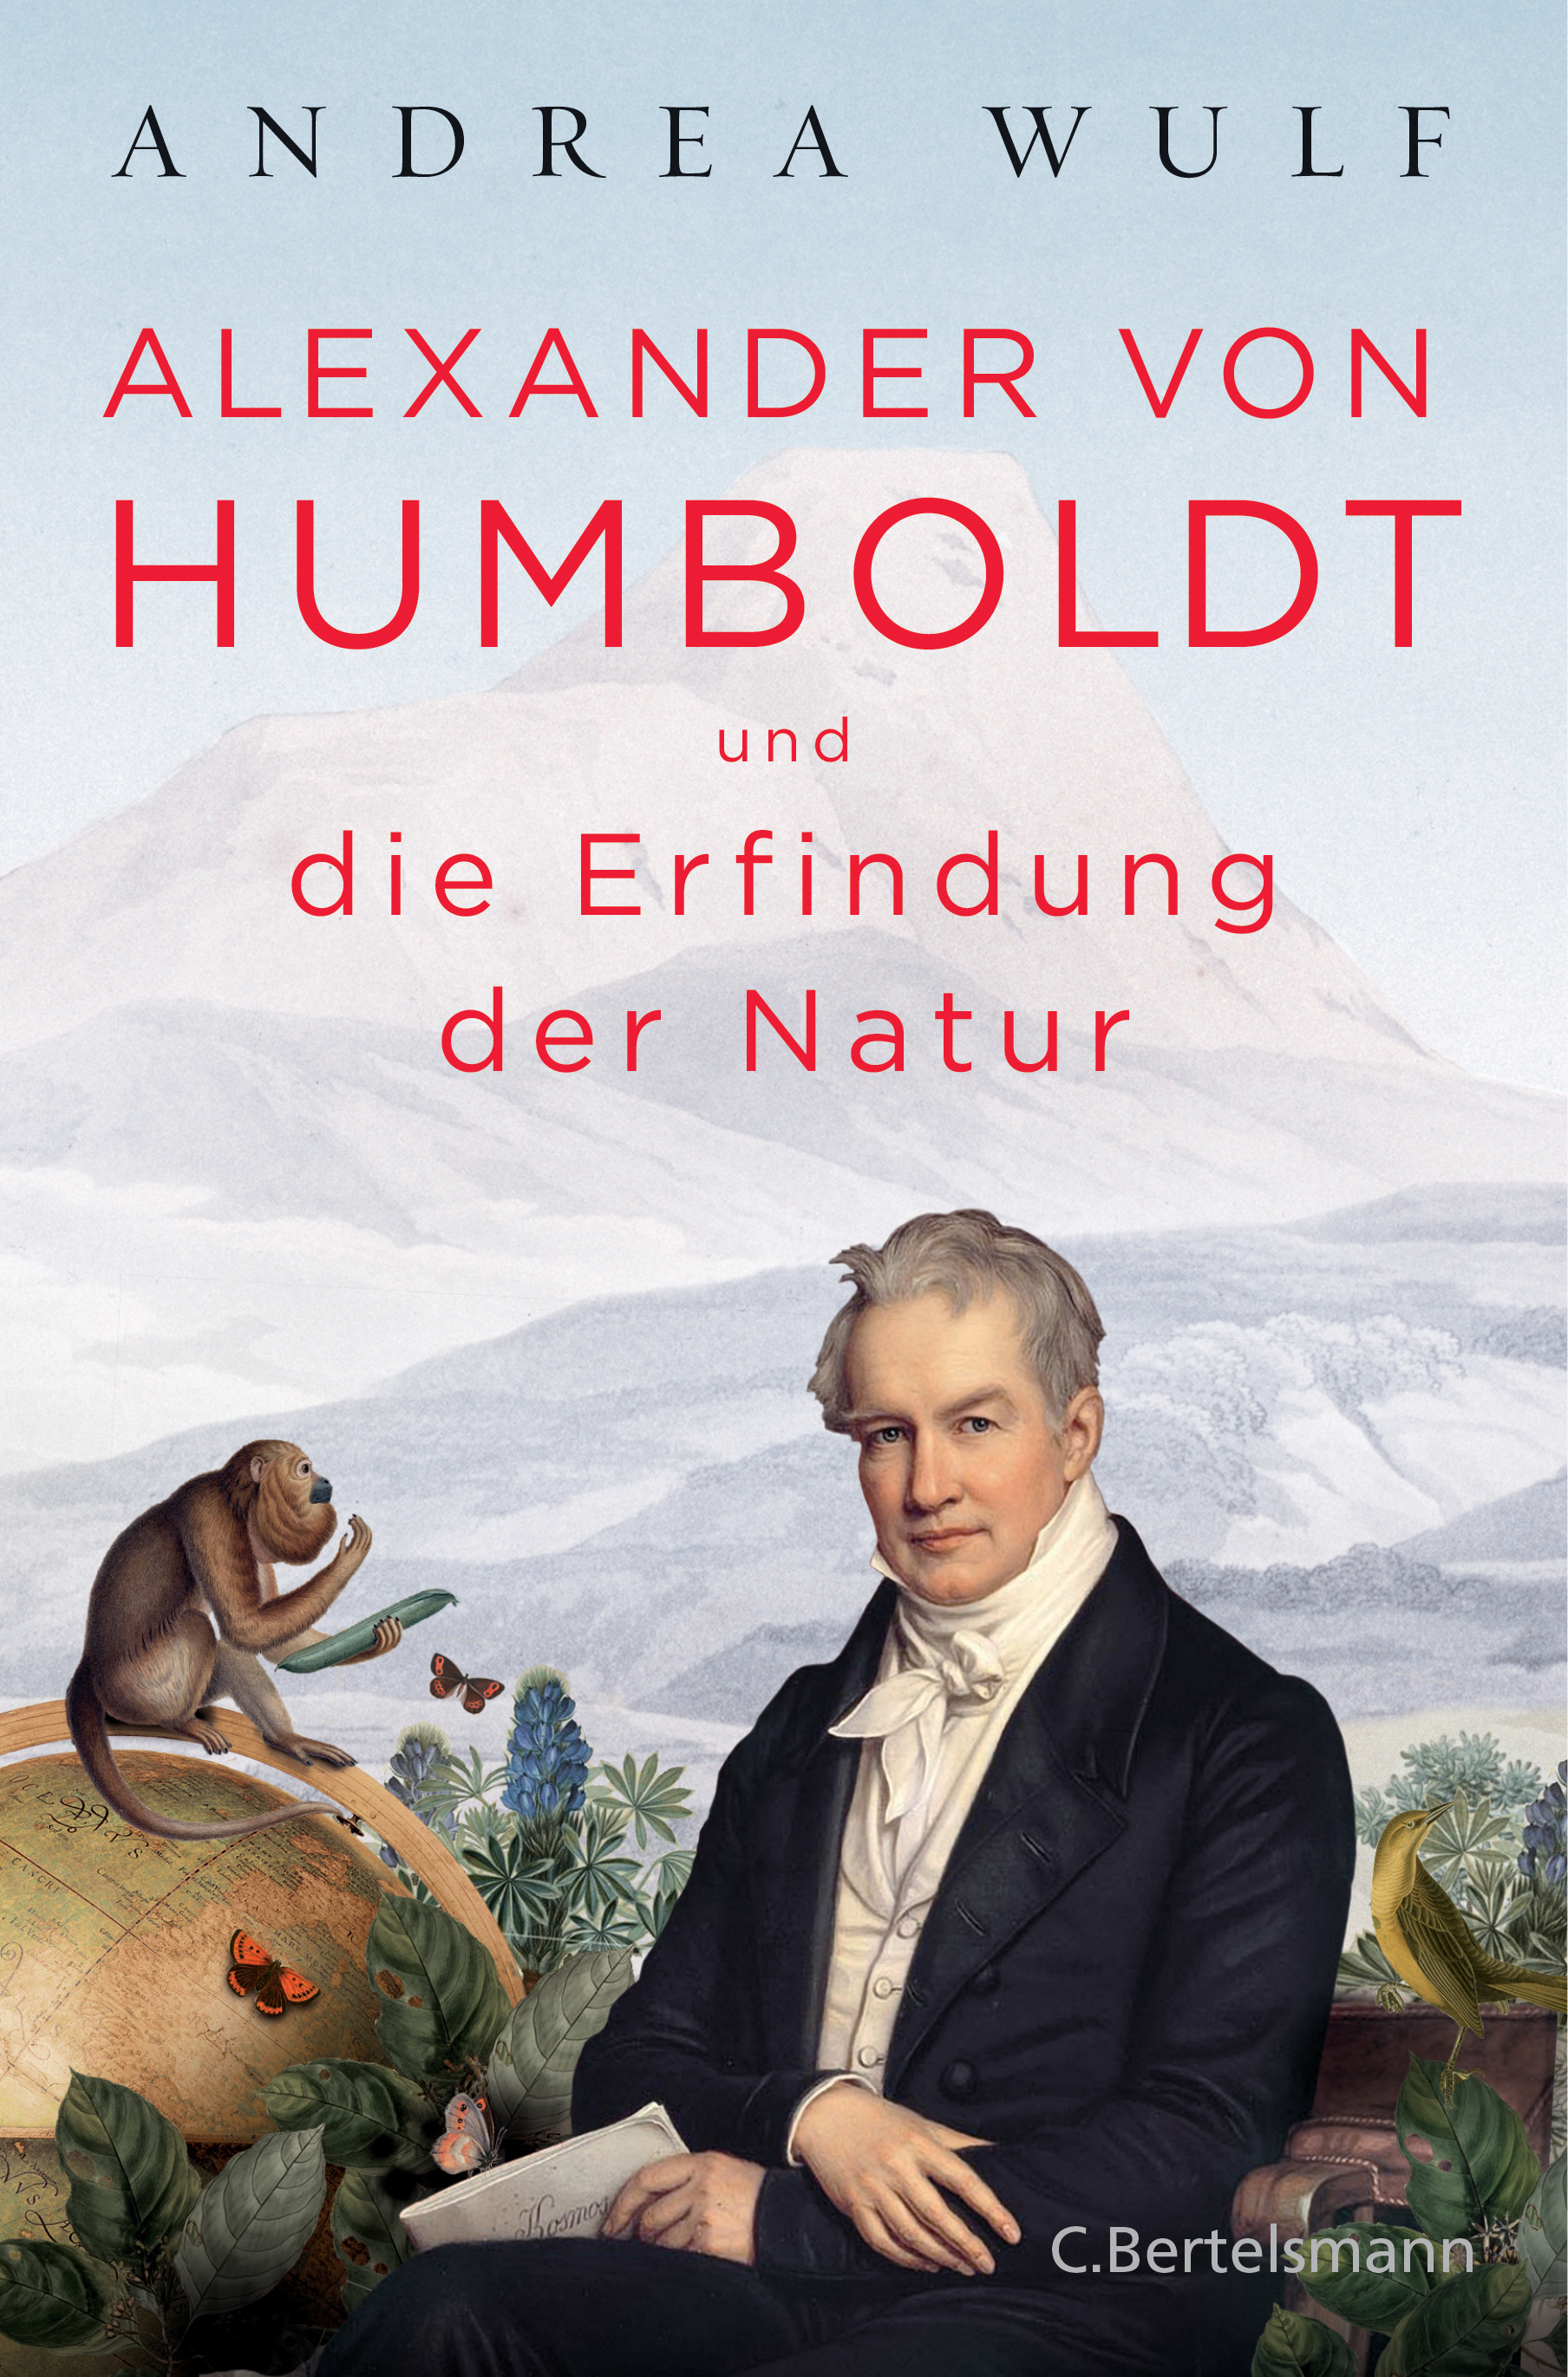 Andrea Wulf, Hainer Kober (Übersetzung): Alexander von Humboldt und die Erfindung der Natur (EBook, Deutsch language, 2016, C. Bertelsmann Verlag)